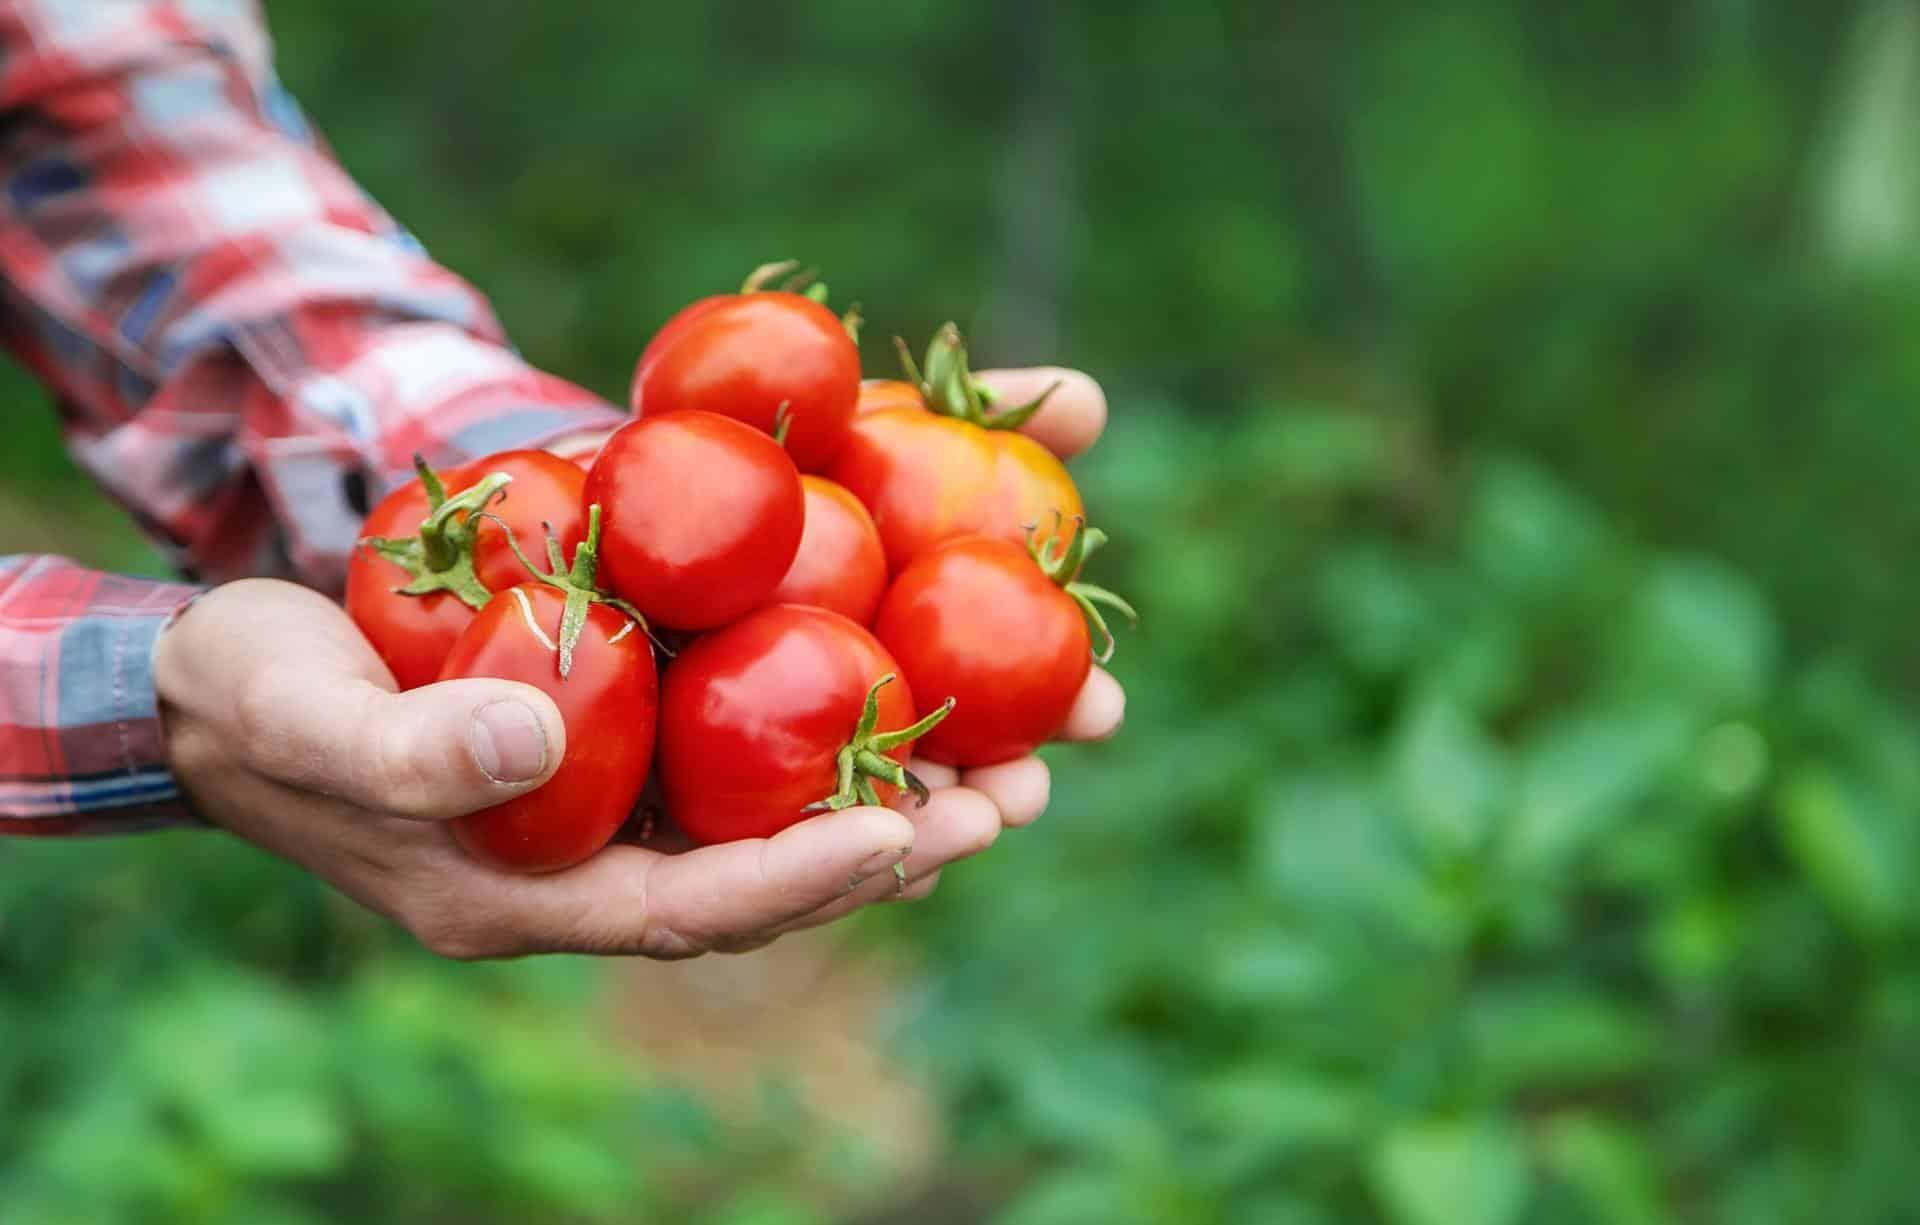 Beneficios del tomate: Beneficios del tomate para la salud científicamente probados - Cover Image